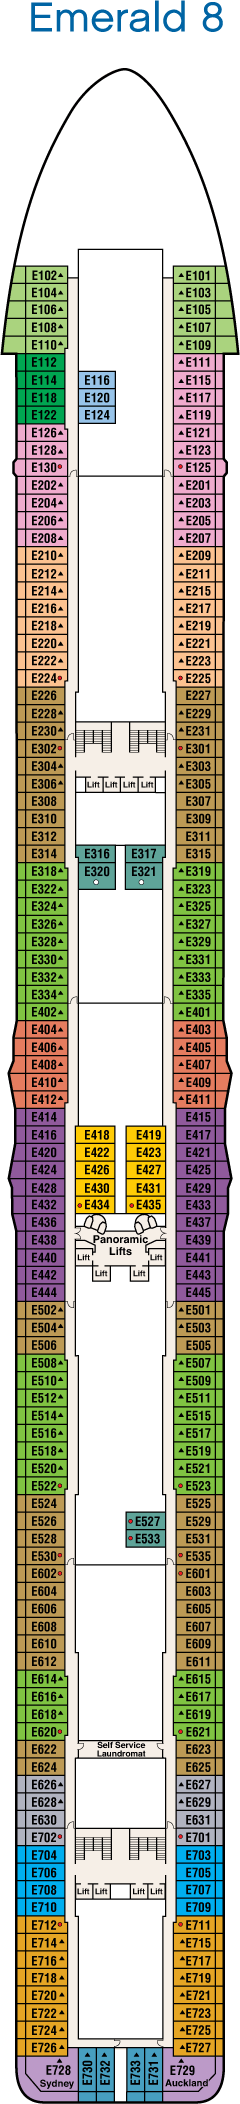 Emerald Deck Deck Plan